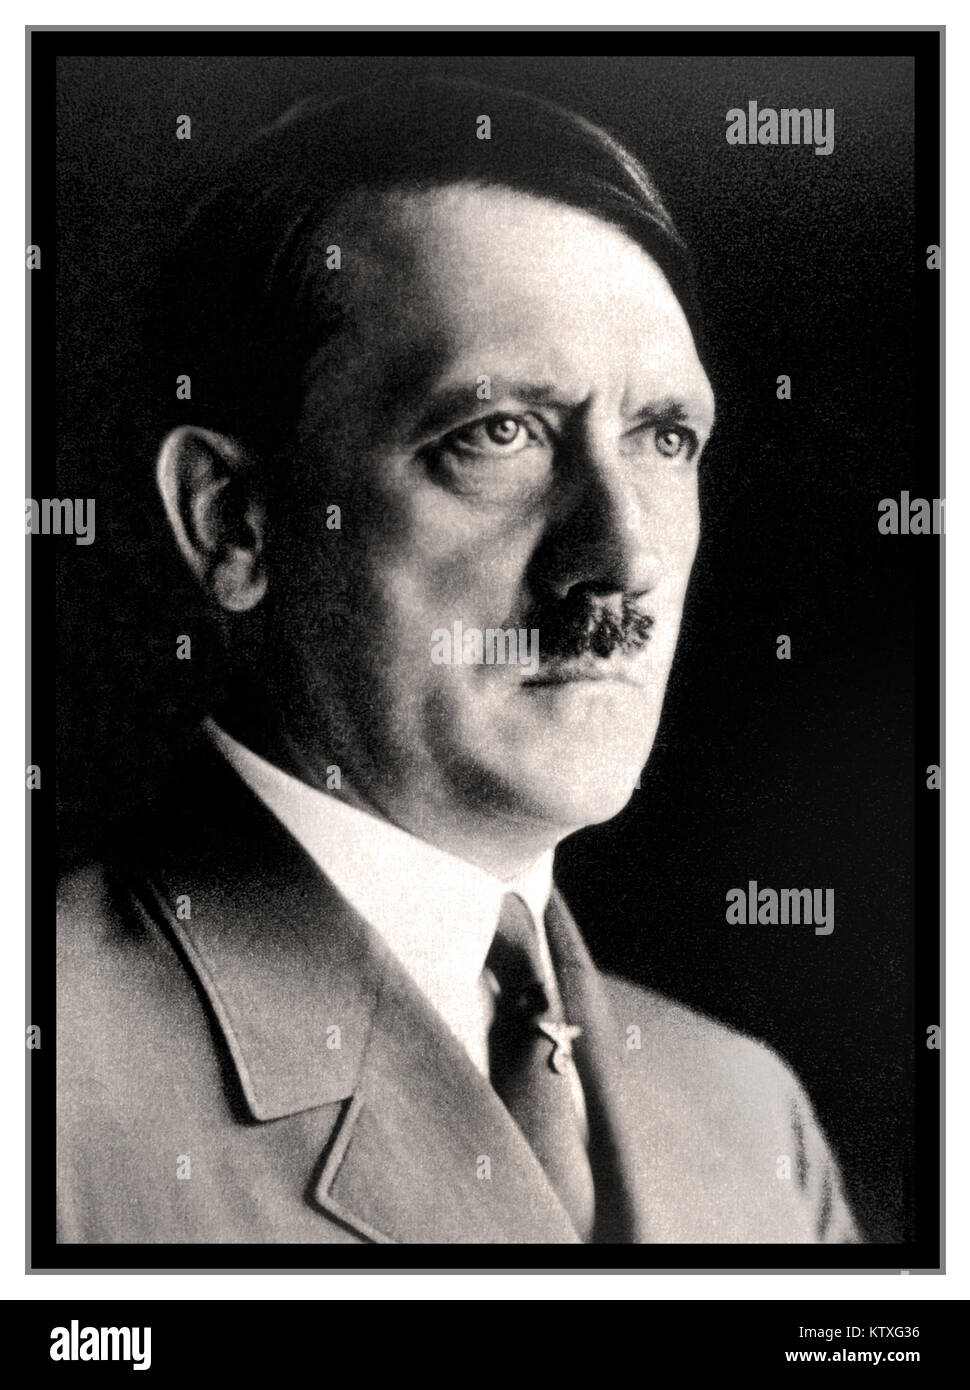 ADOLF HITLER PORTRAIT 1930er s s s&W Studio posierte Kopf- und Schulterportrait-Fotografie von Adolf Hitler in Uniform von Heinrich Hoffman Hitlers persönlichem Fotografen (auch ID: 2F9G747) Stockfoto